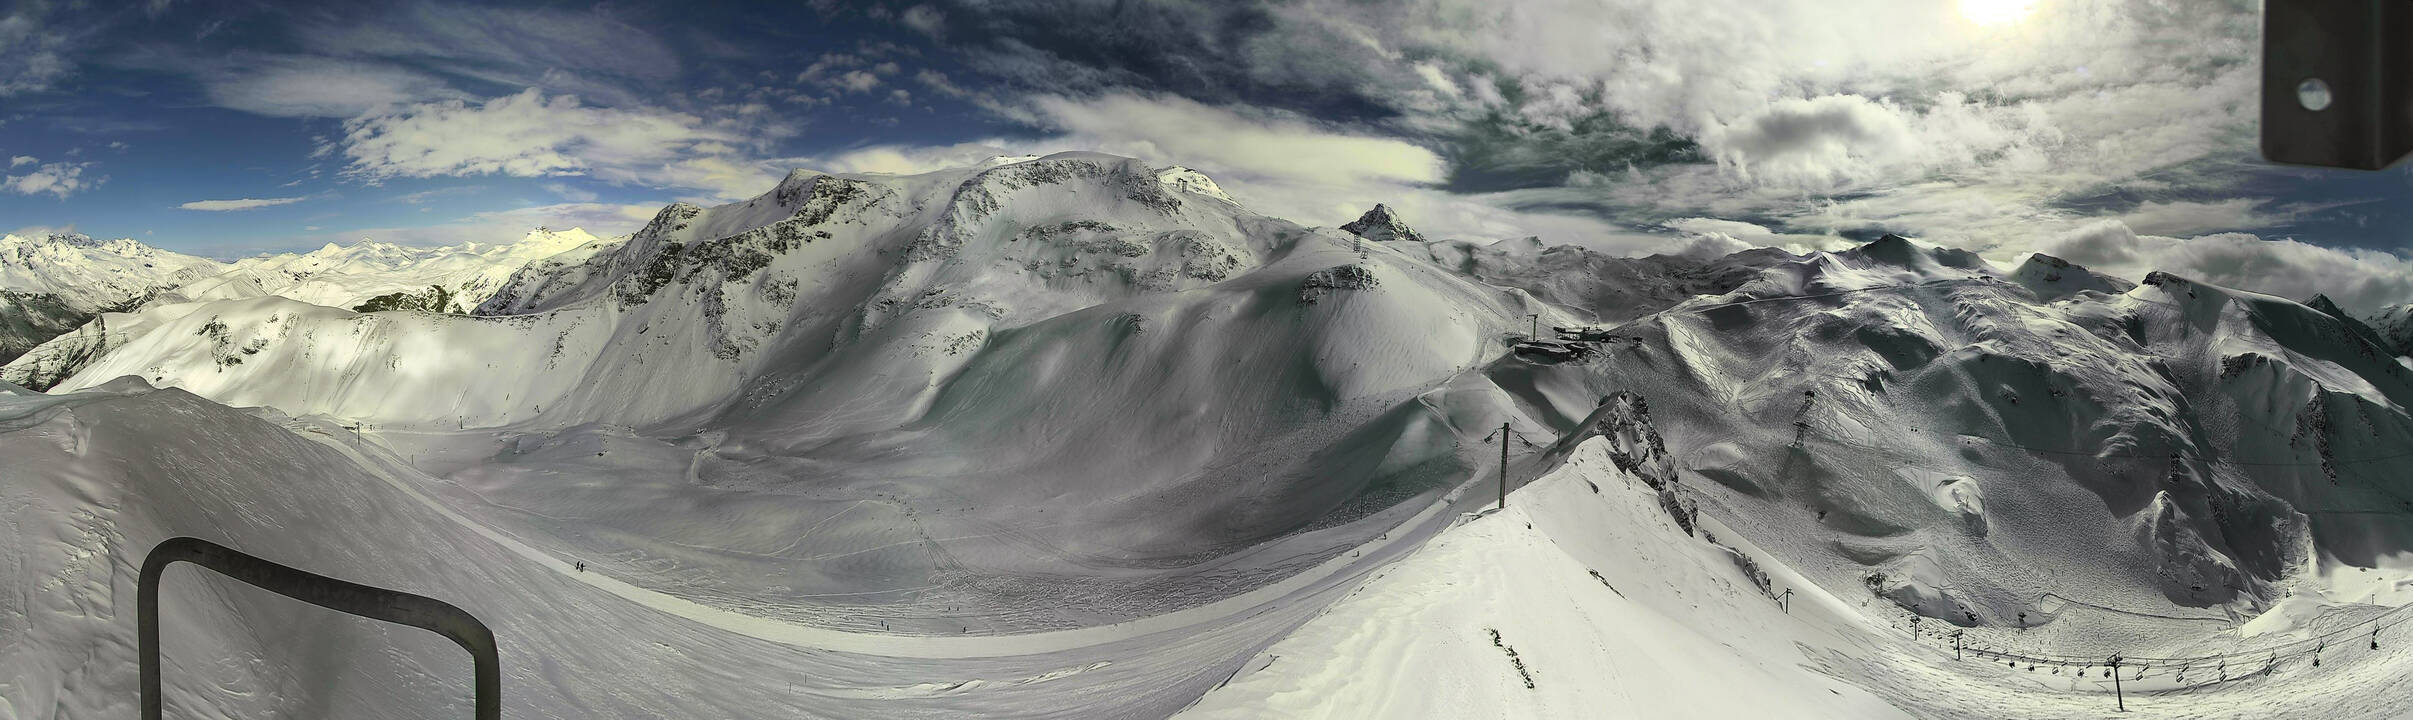 Les 2 Alpes webcam - La Fee